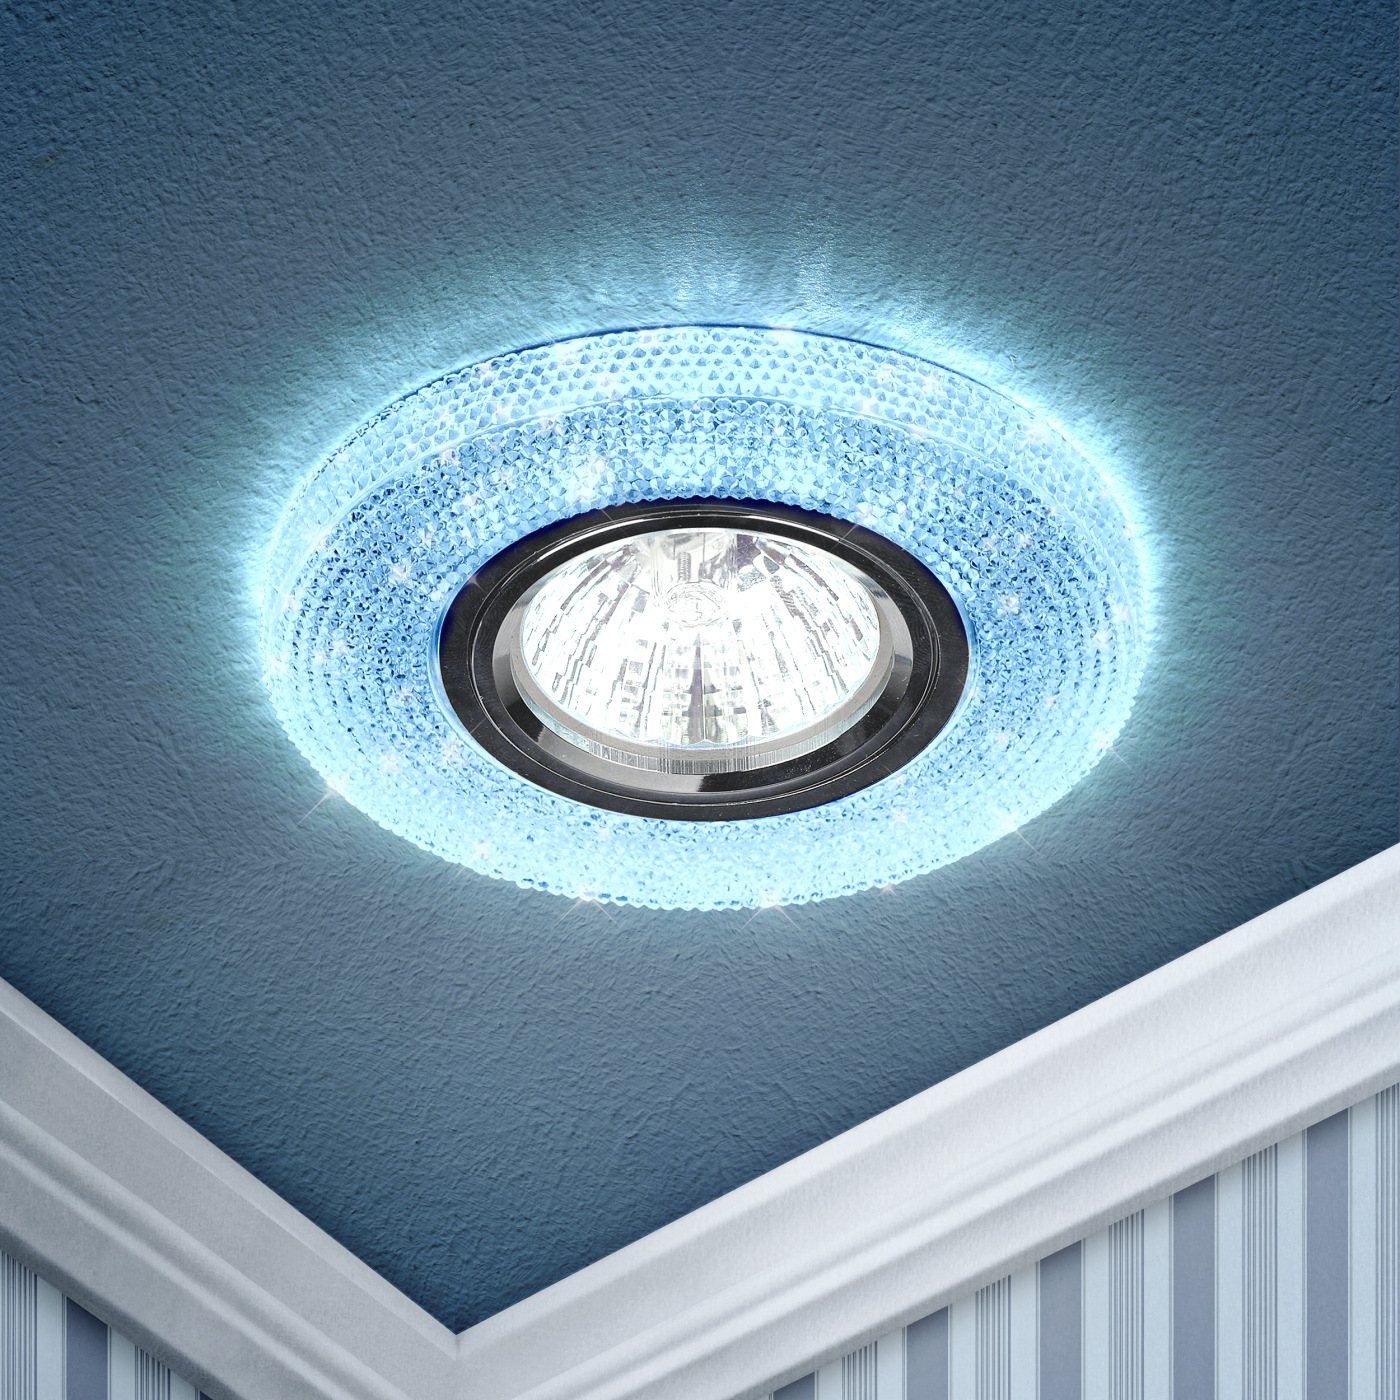 Купить DK LD1 BL Светильник ЭРА декор cо светодиодной подсветкой, голубой, Эра, LED